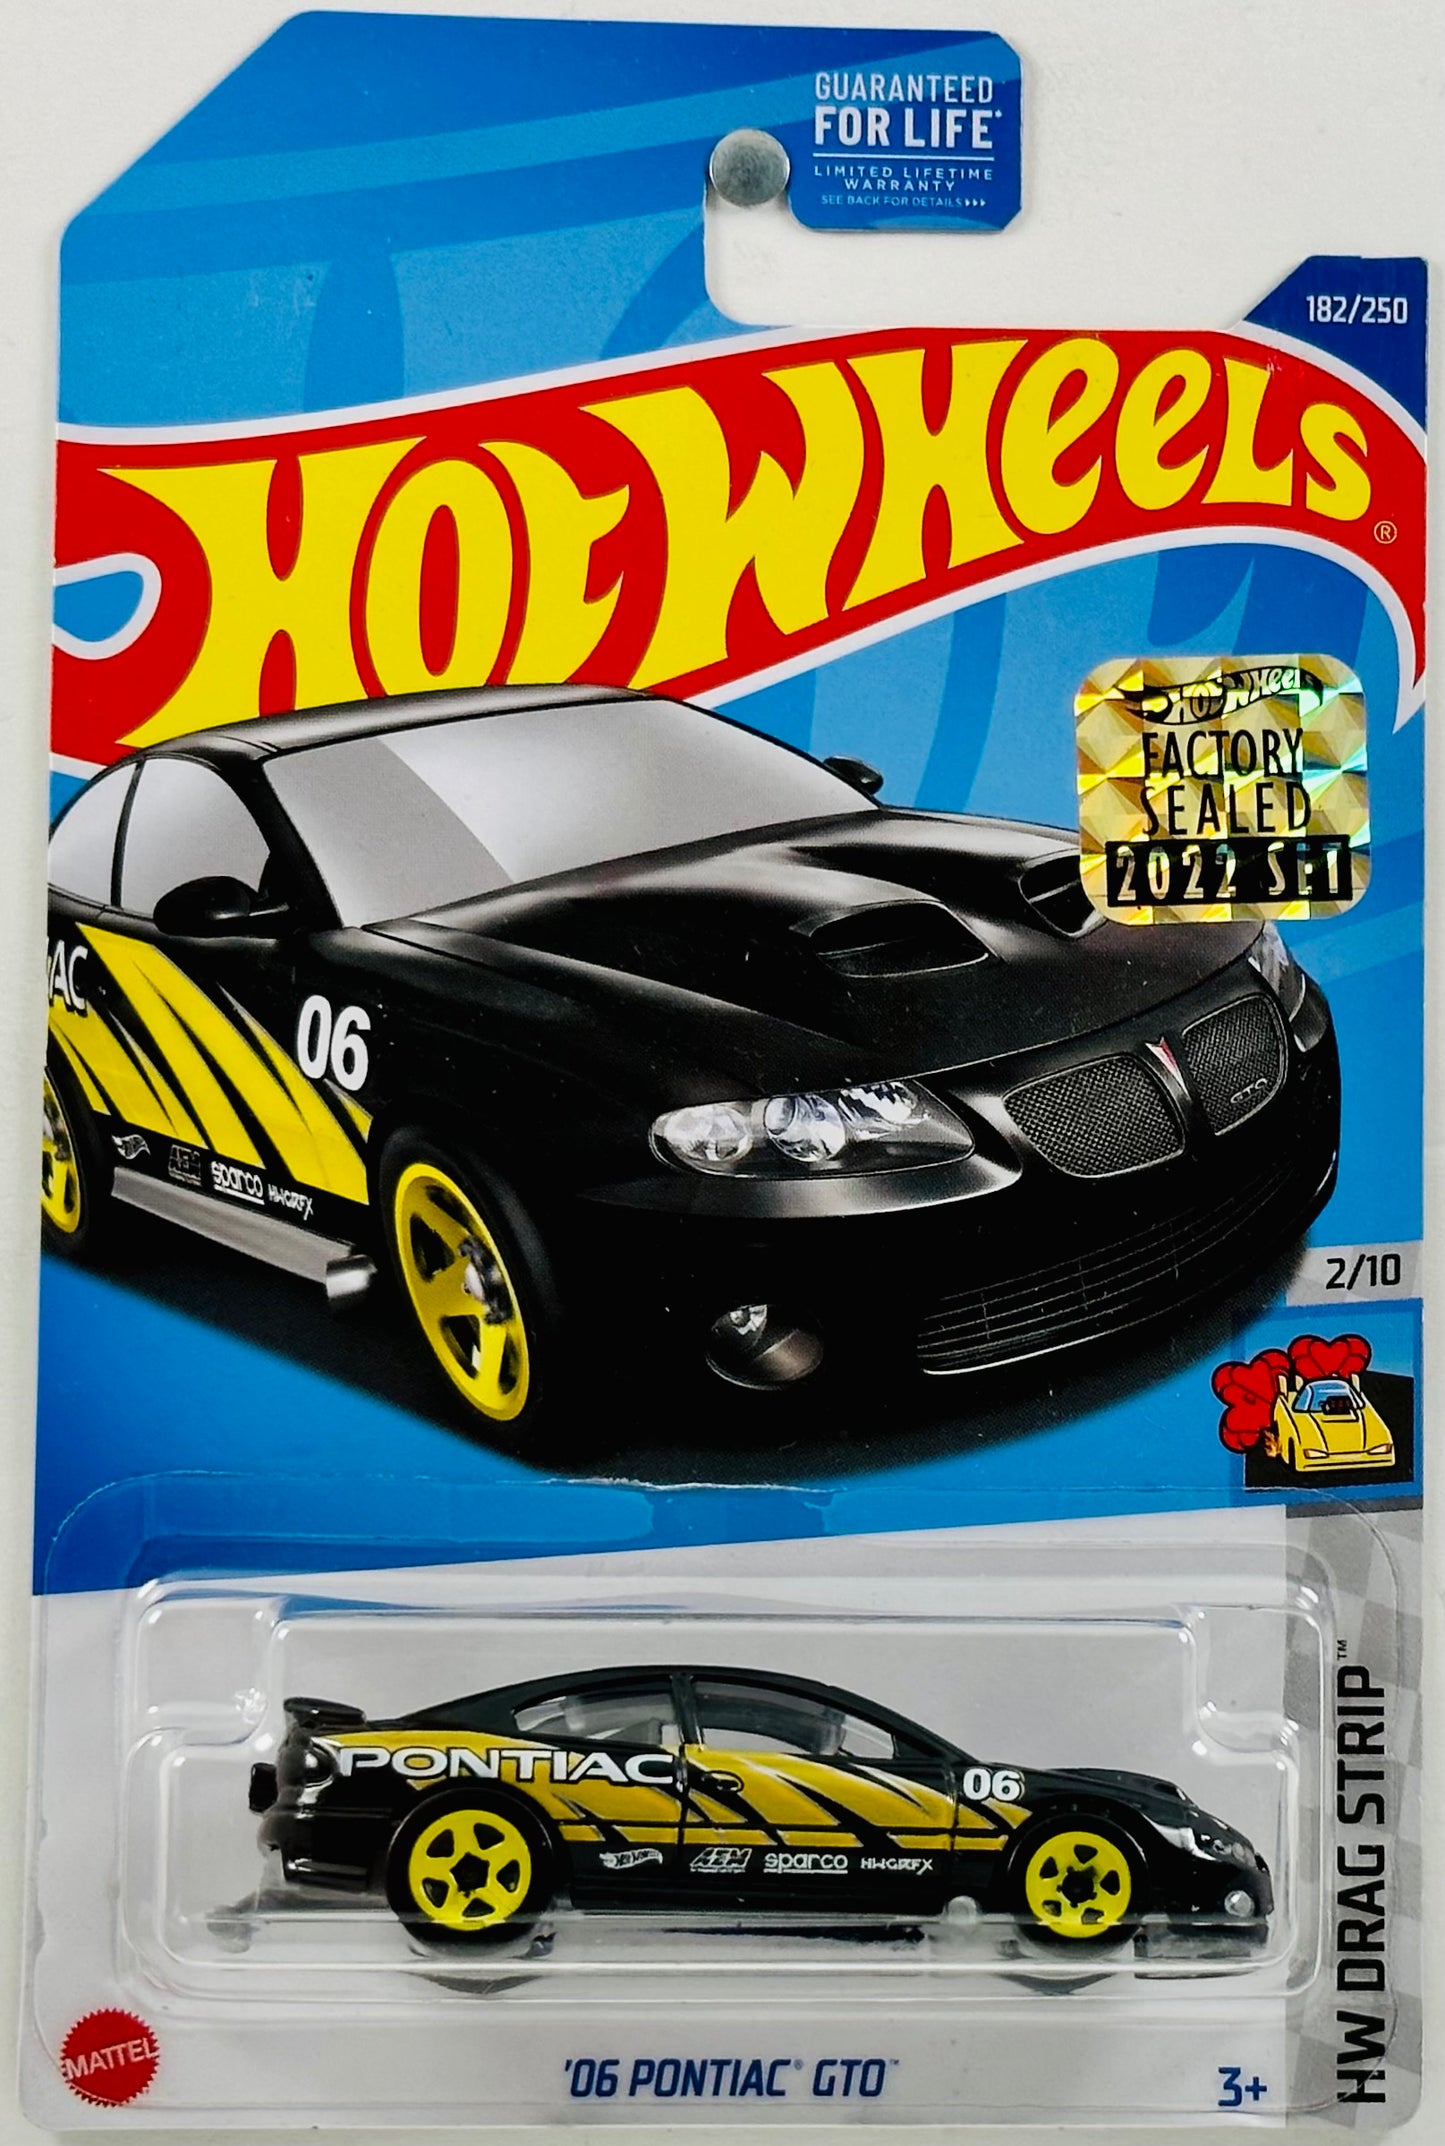 Hot Wheels 2022 - Collector # 182/250 - HW Drag Strip 2/10 - '06 Pontiac GTO - Black - FSC